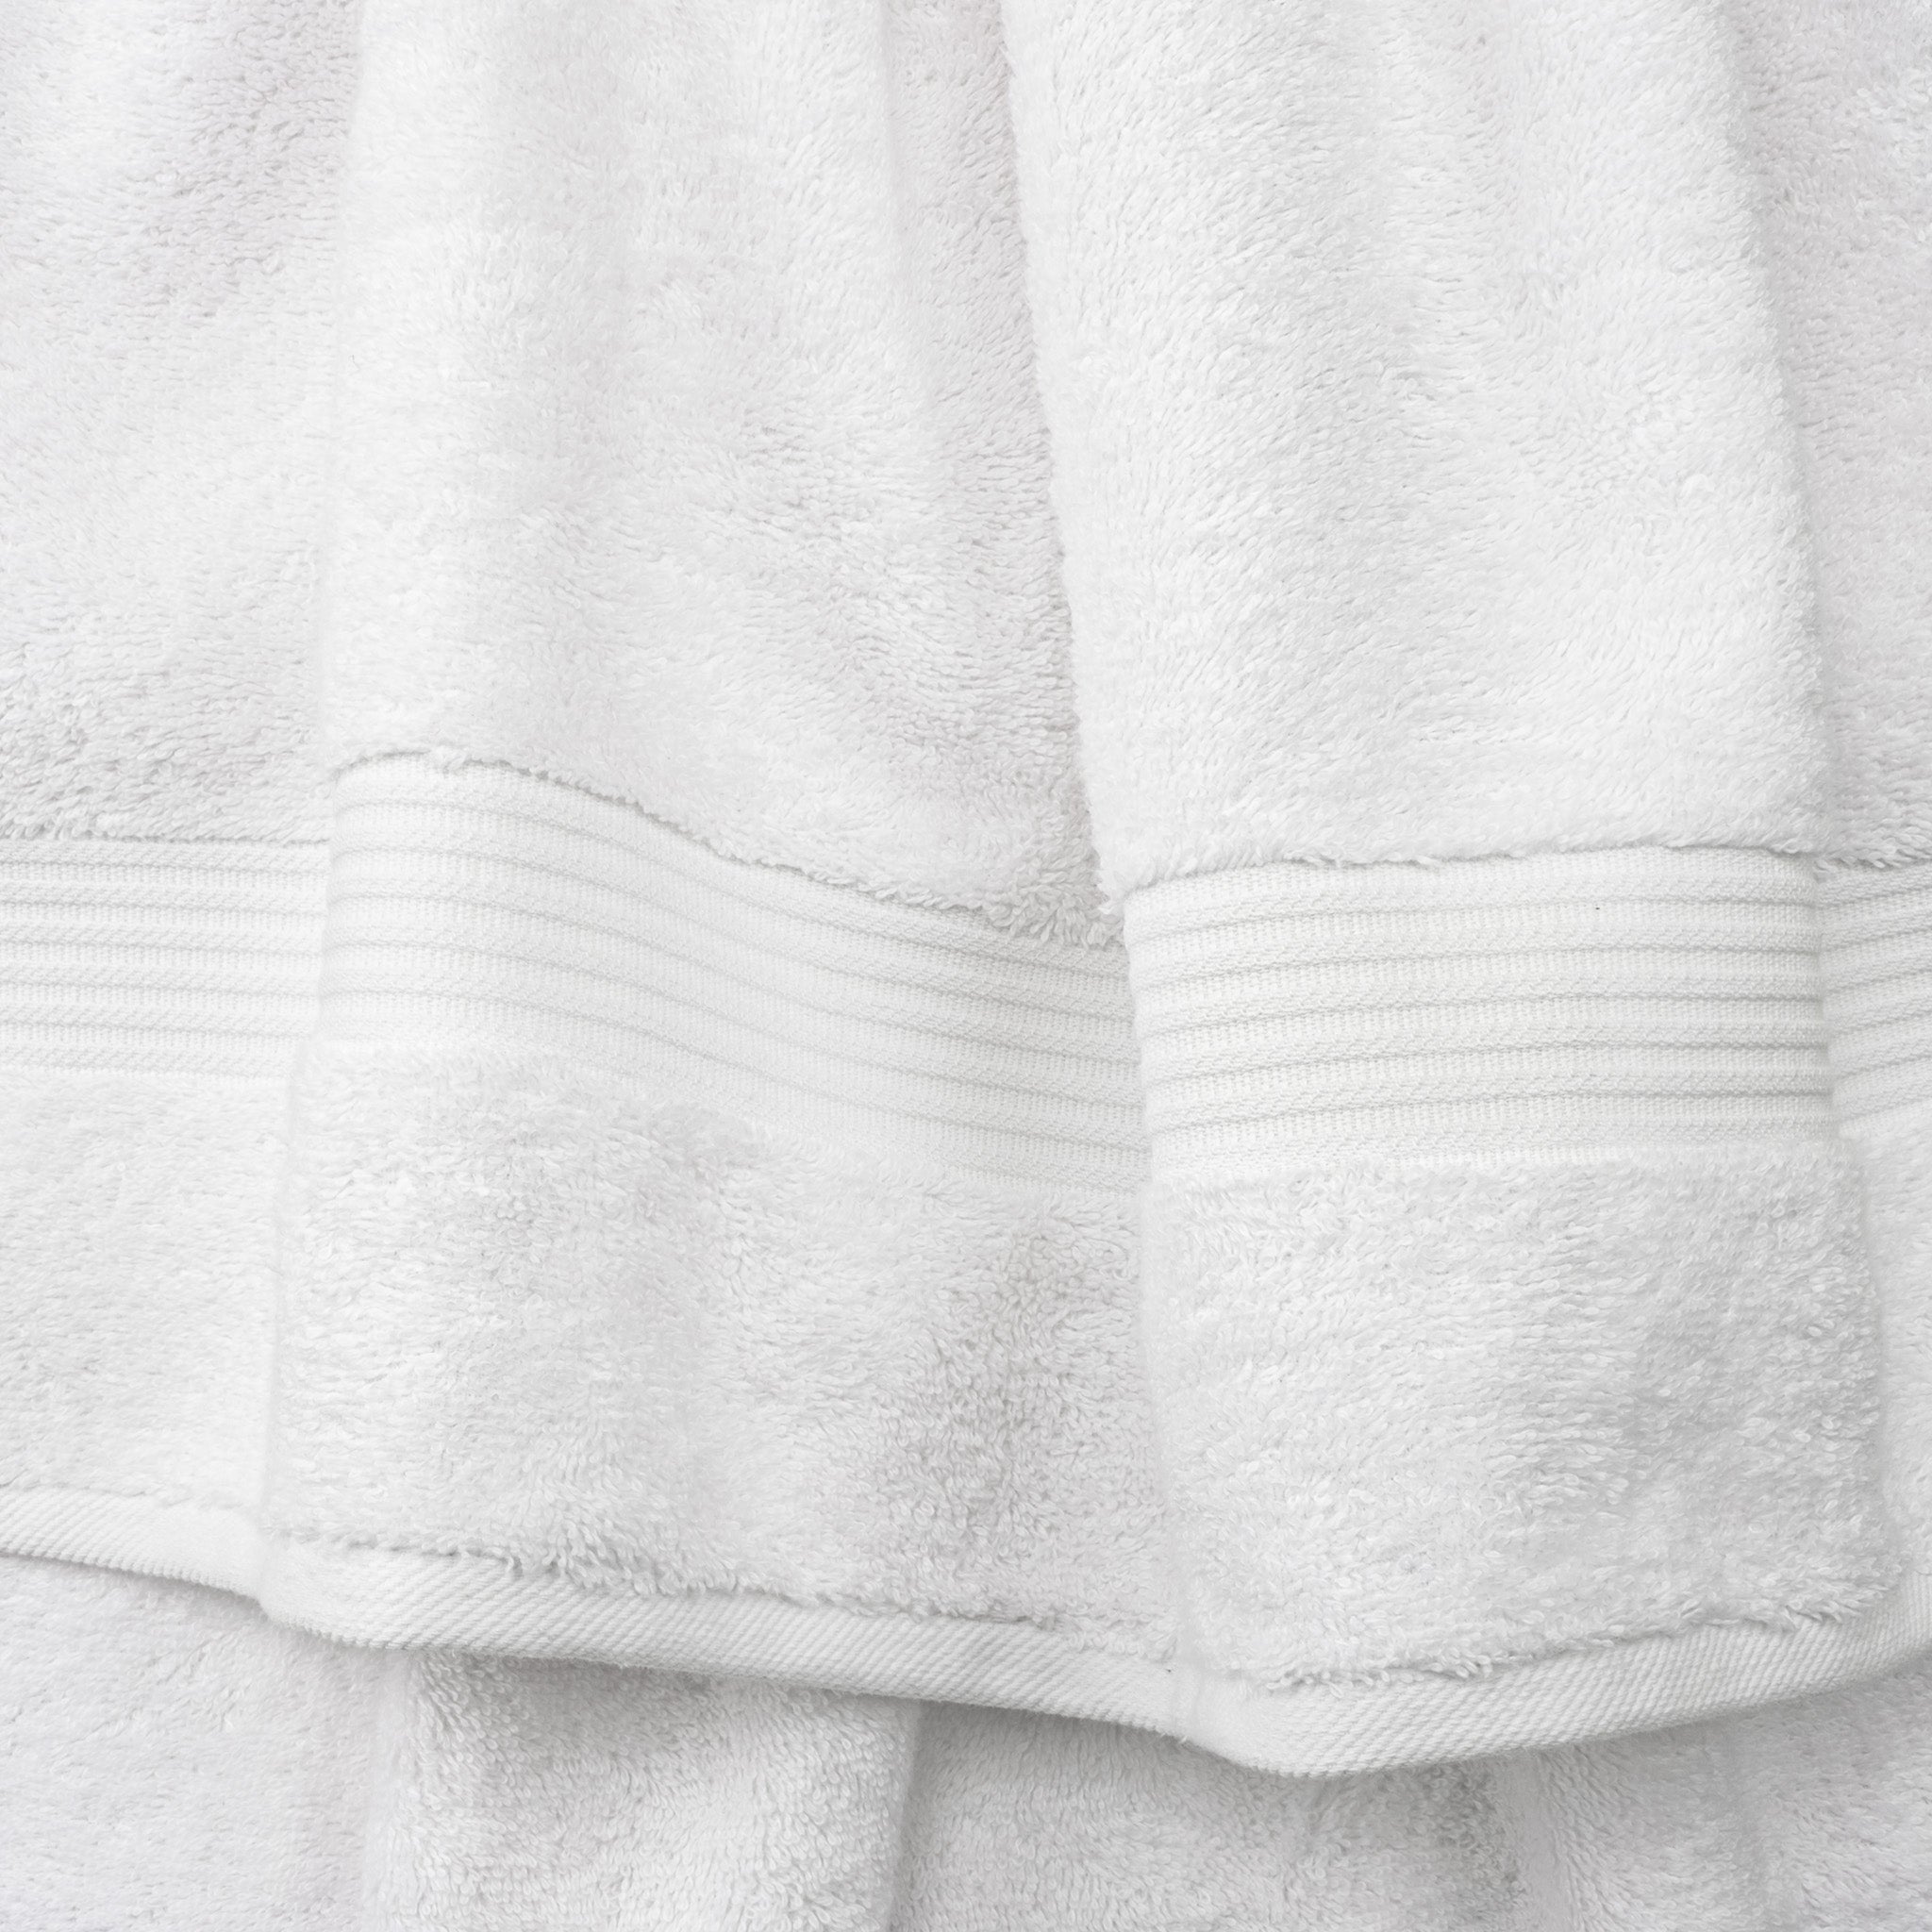 American Soft Linen Bekos 100% Cotton Turkish Towels 6 Piece Bath Towel Set -white-03